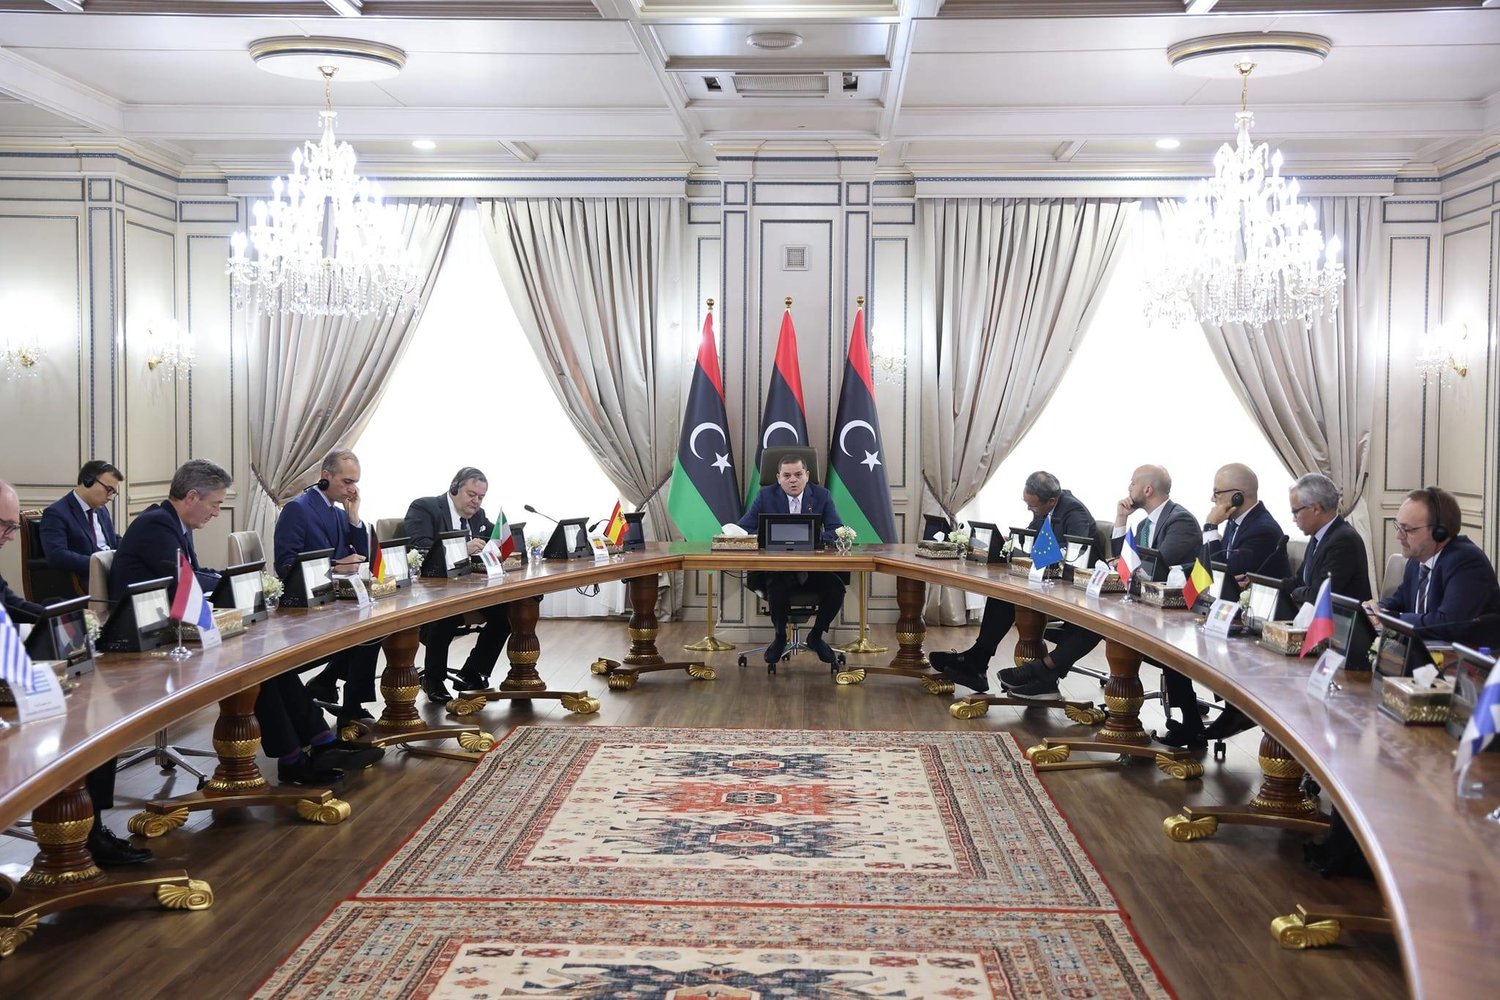 دوافع الاتحاد الأوروبي للعودة إلى الساحة الليبية